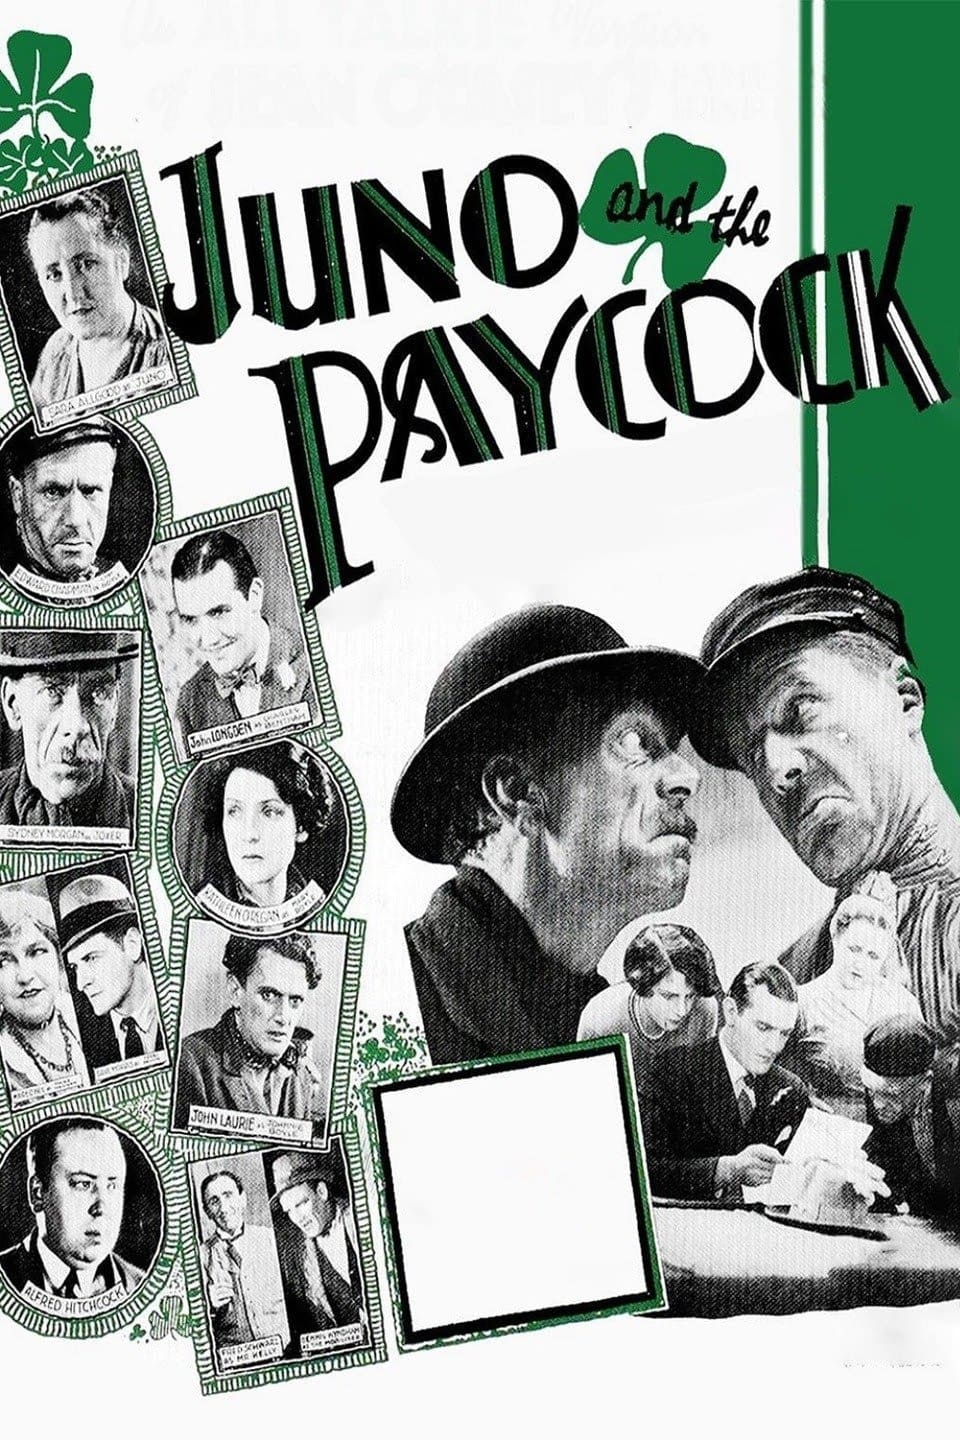 Juno y el pavo real (1930)